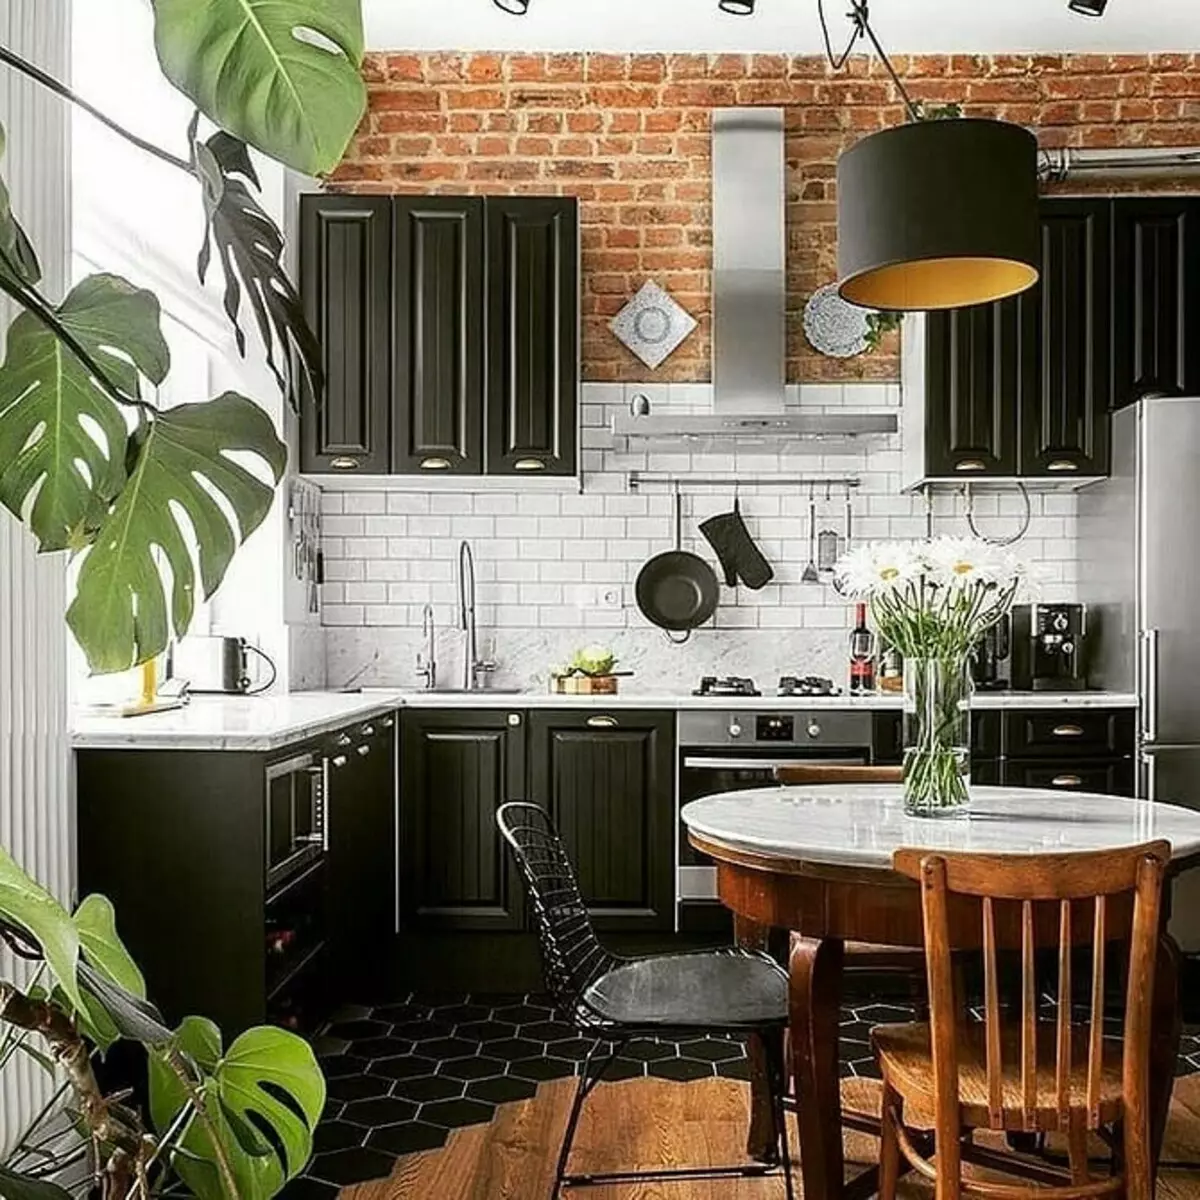 70+ ایده های طراحی اتاق آشپزخانه اتاق نشیمن در سبک Loft - عکس های داخلی و راهنمایی واقعی 8450_141